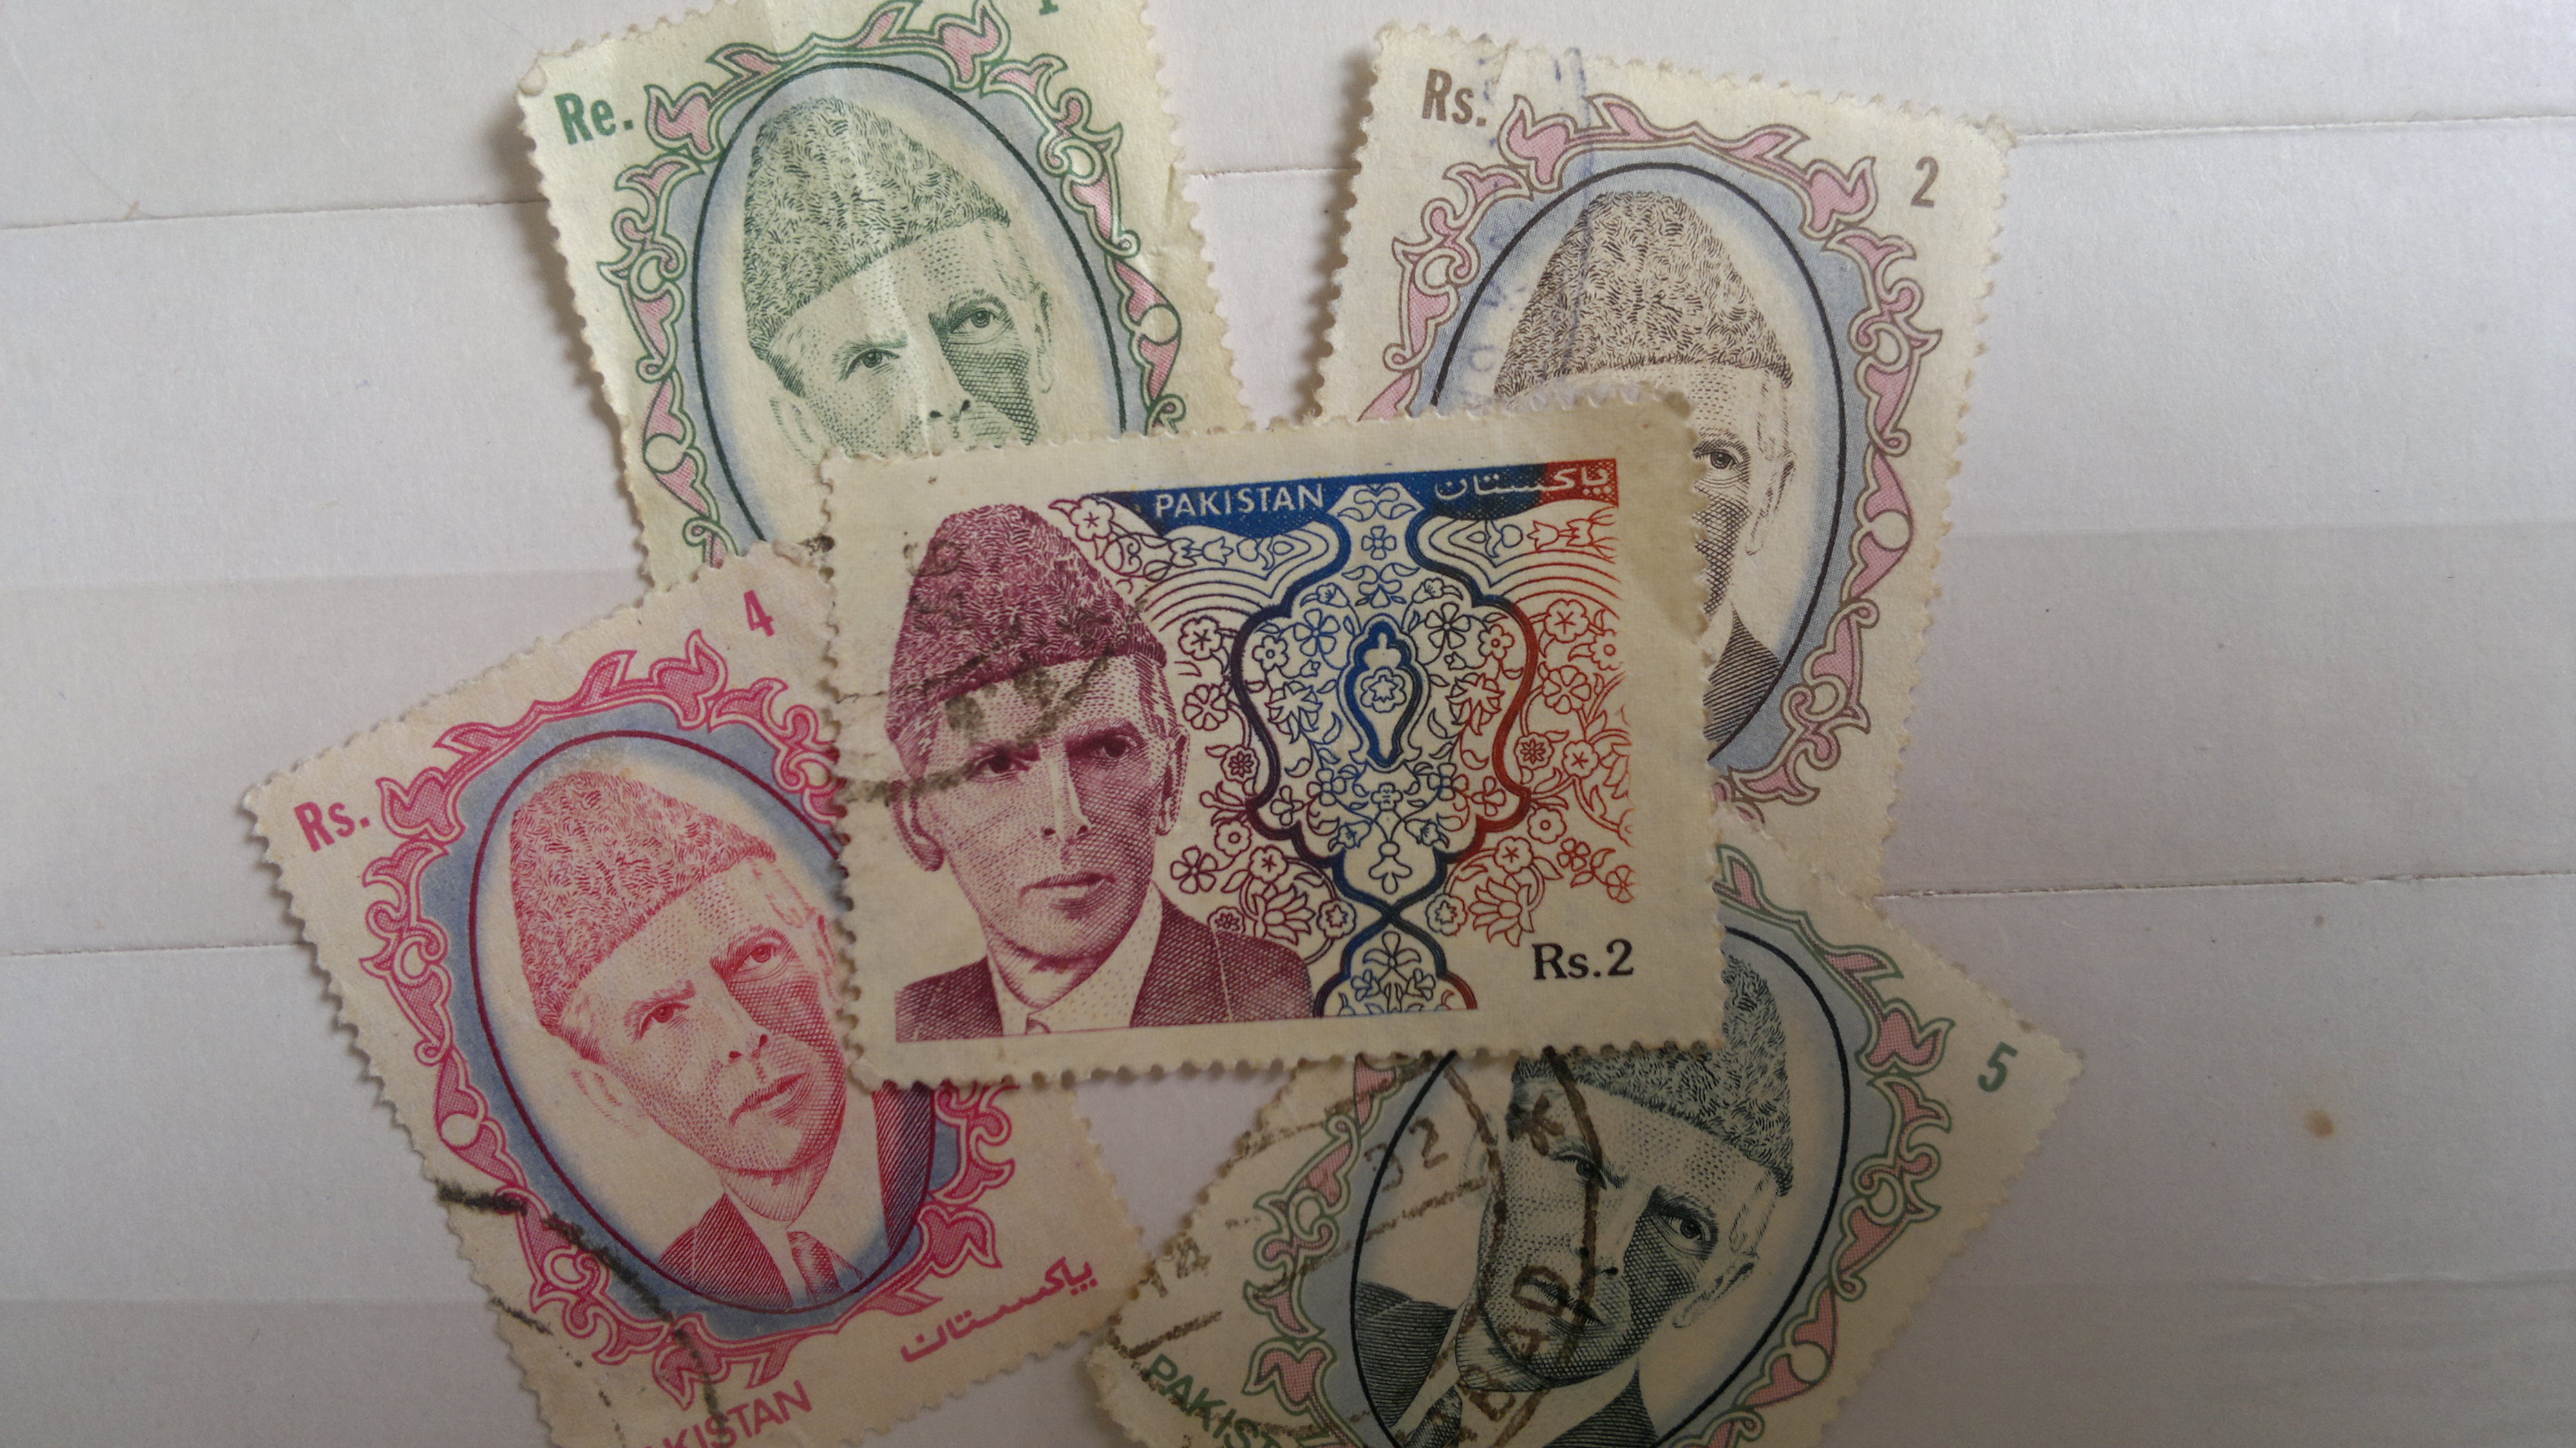 Legacy stamps depicting Quaid-e-Azam